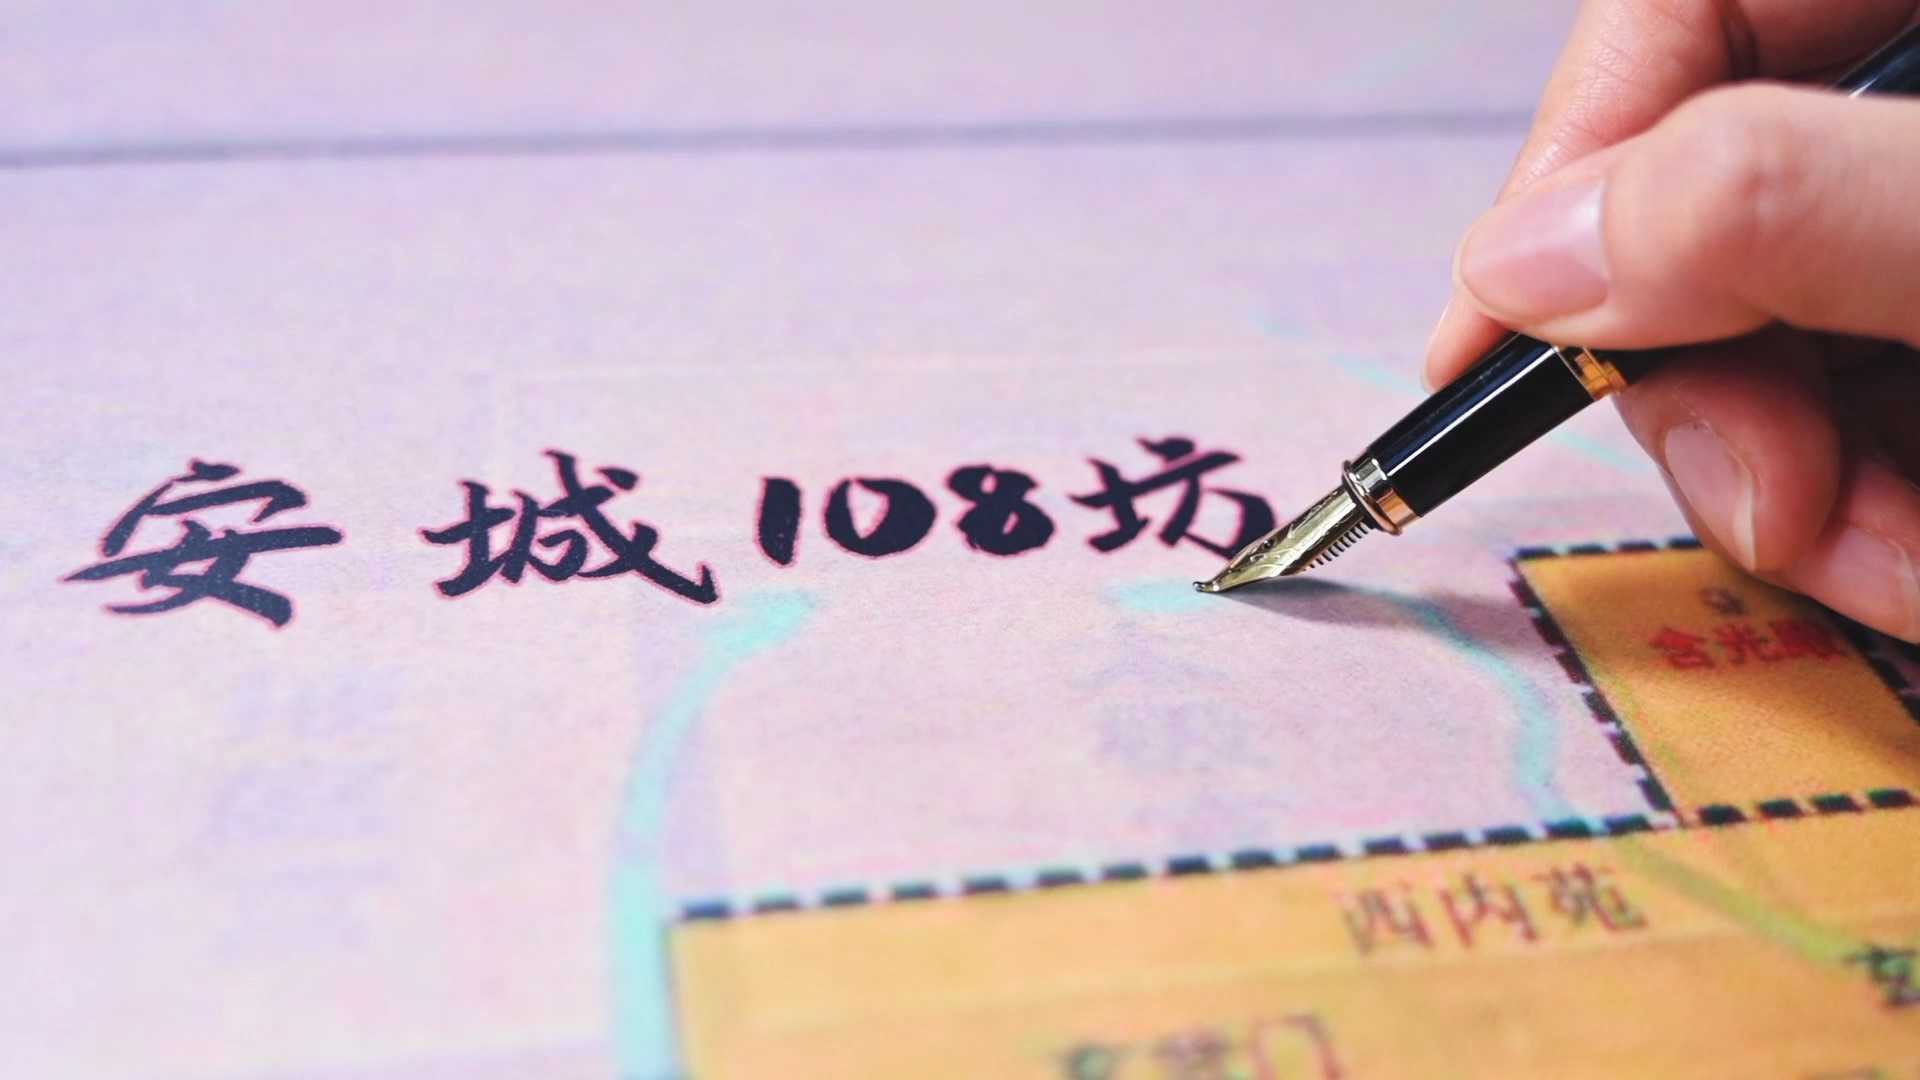 皇城驿-唐108坊文化主题酒店-创意宣传片